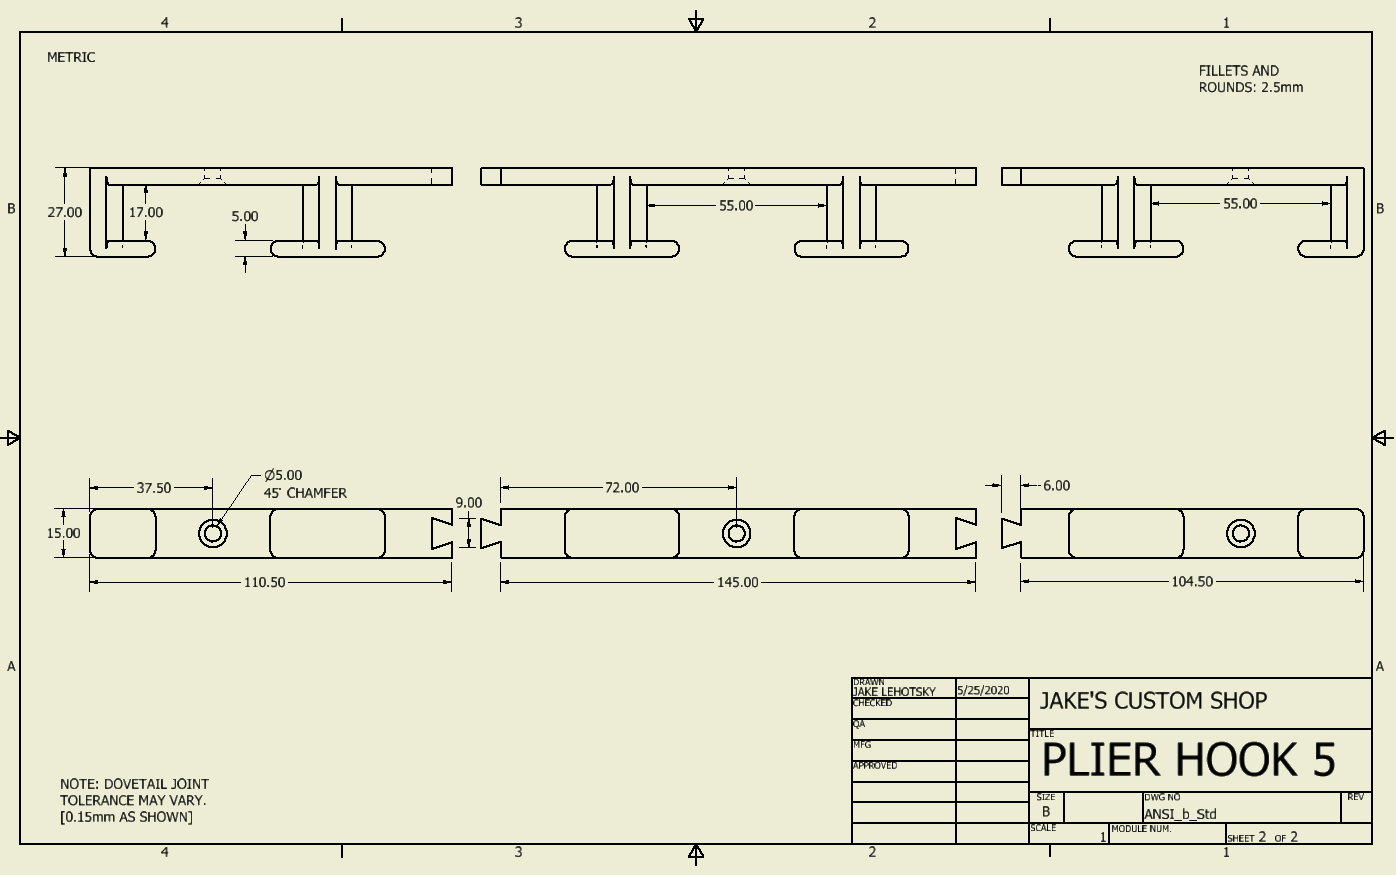 The Plier Holder schematic